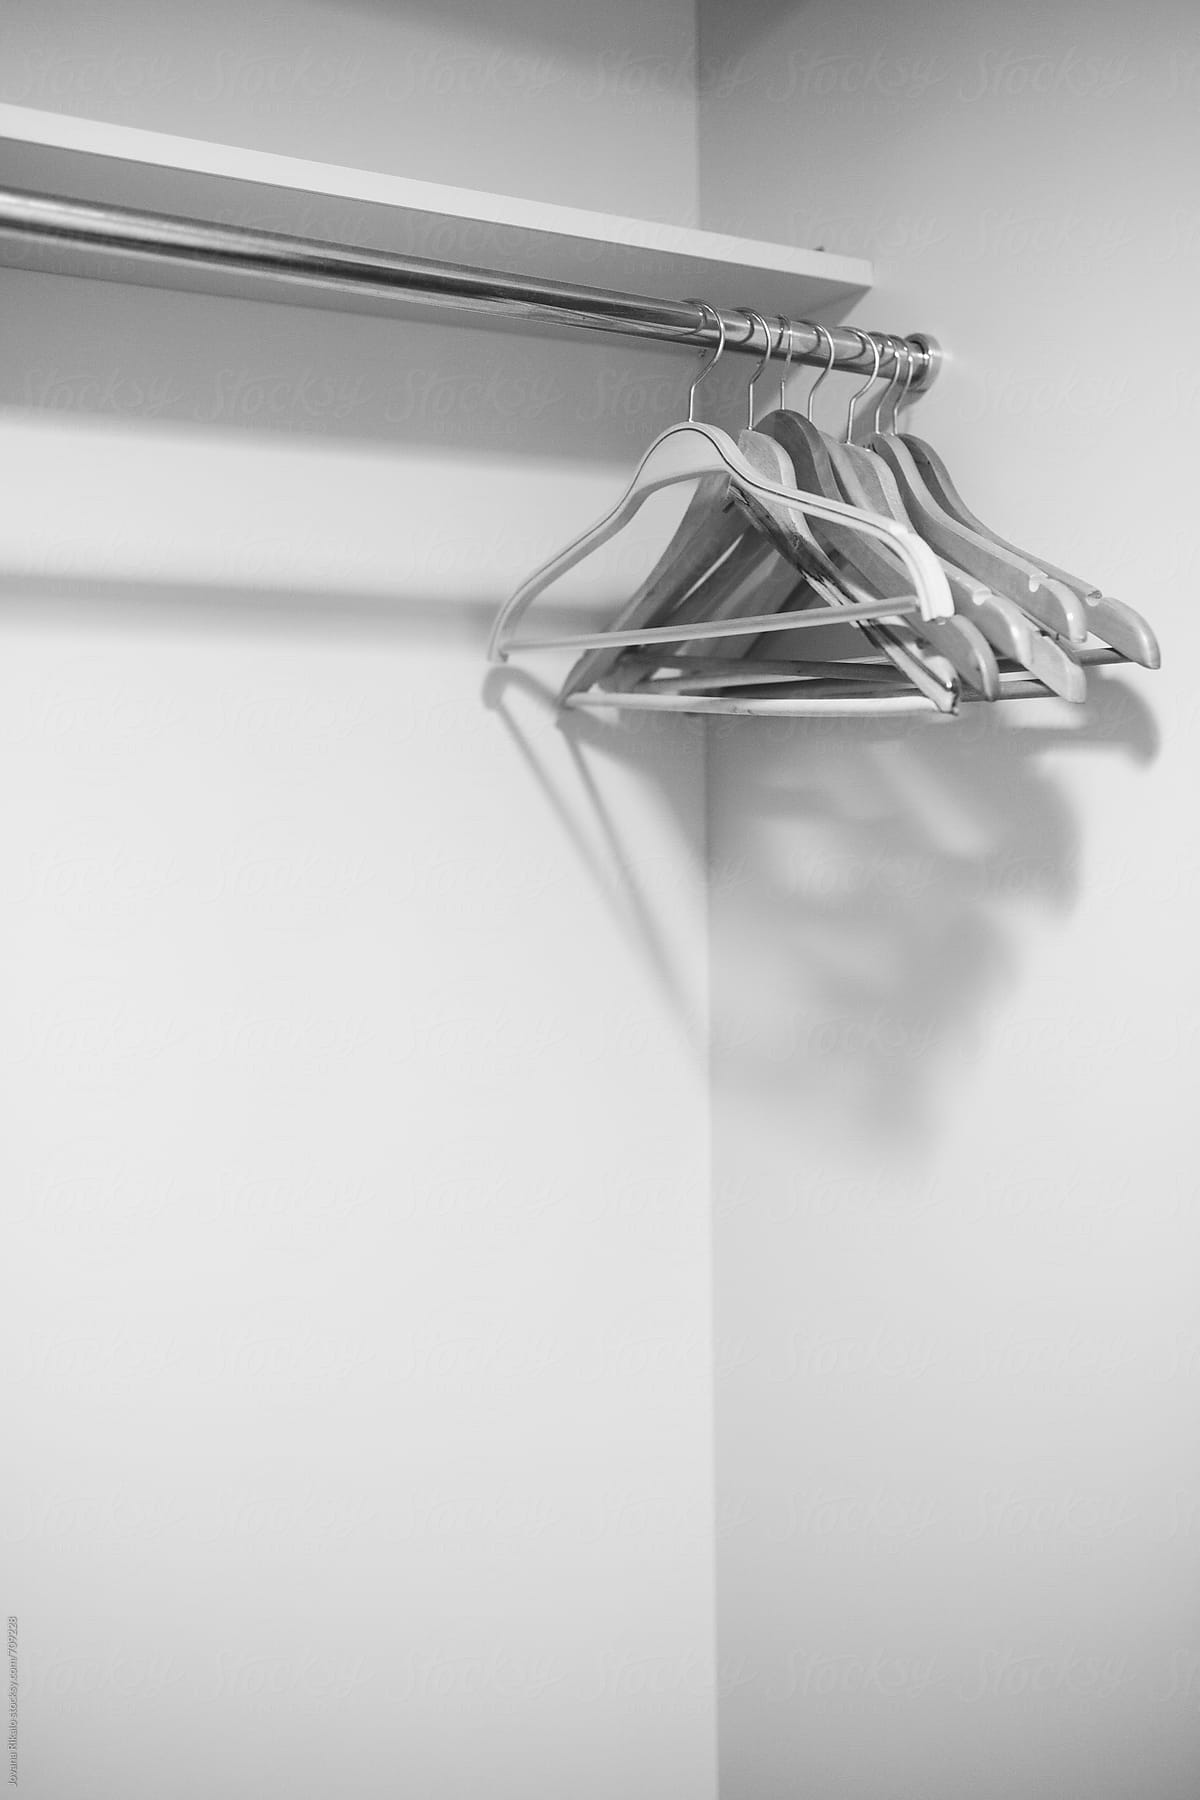 Coat hangers on a metal rack